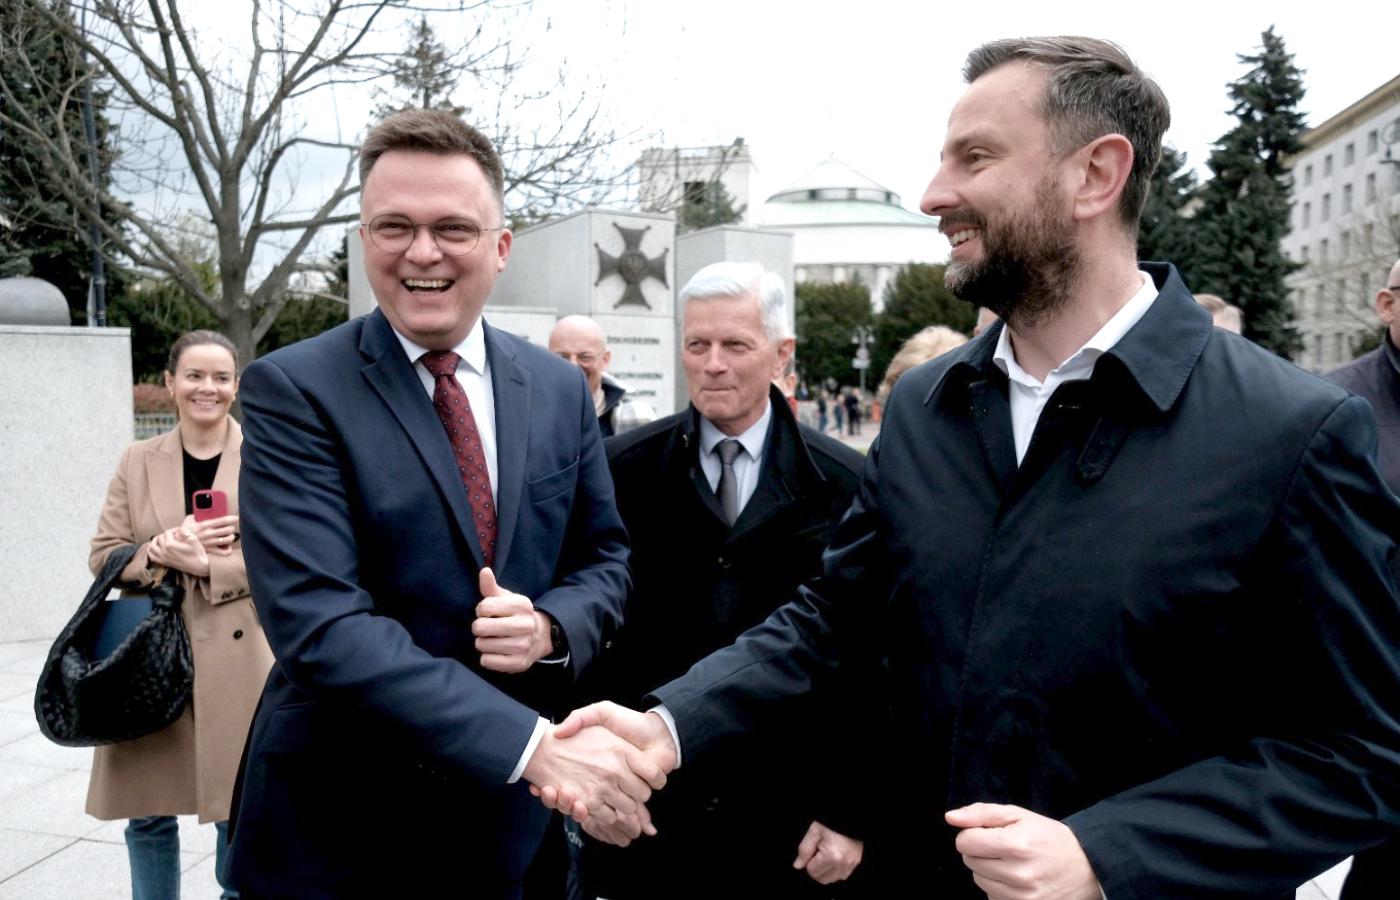 Szymon Hołownia (Polska 2050) i Władysław Kosiniak-Kamysz (PSL) przed Sejmem